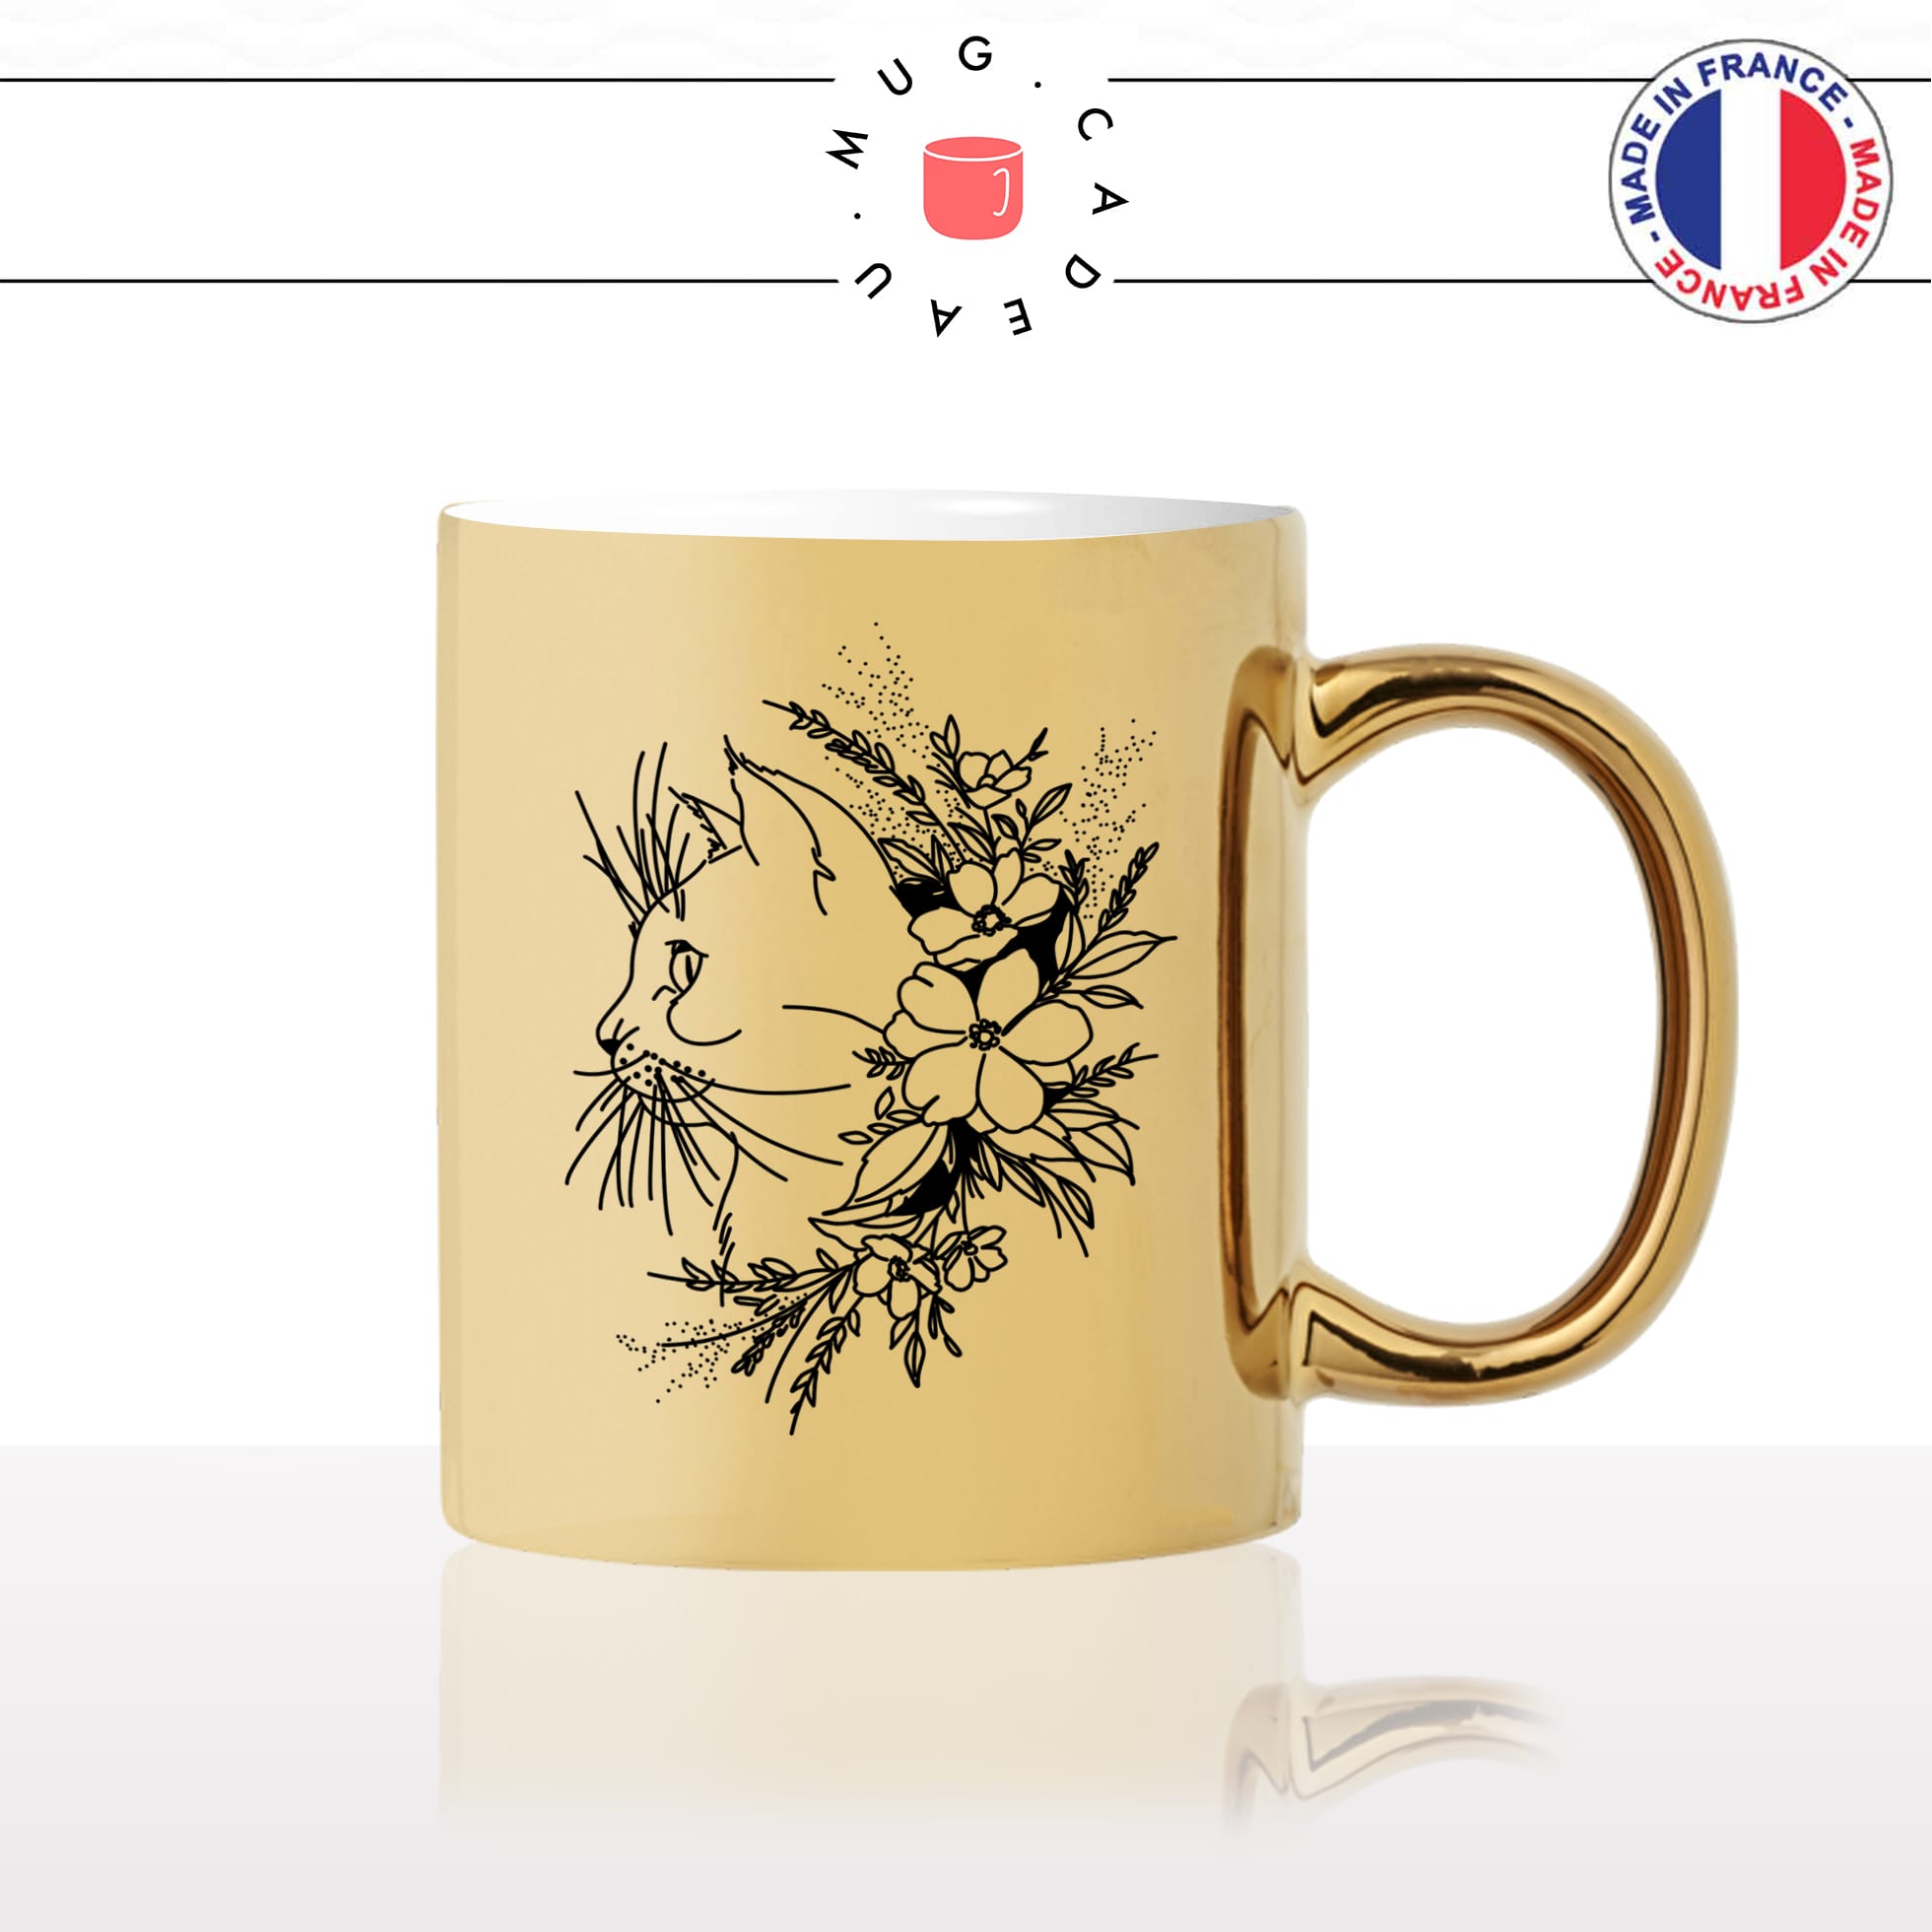 mug-tasse-or-doré-fleurs-moustaches-chats-animal-chaton-dessin-noir-fun-café-thé-idée-cadeau-original-personnalisable-gold2-min